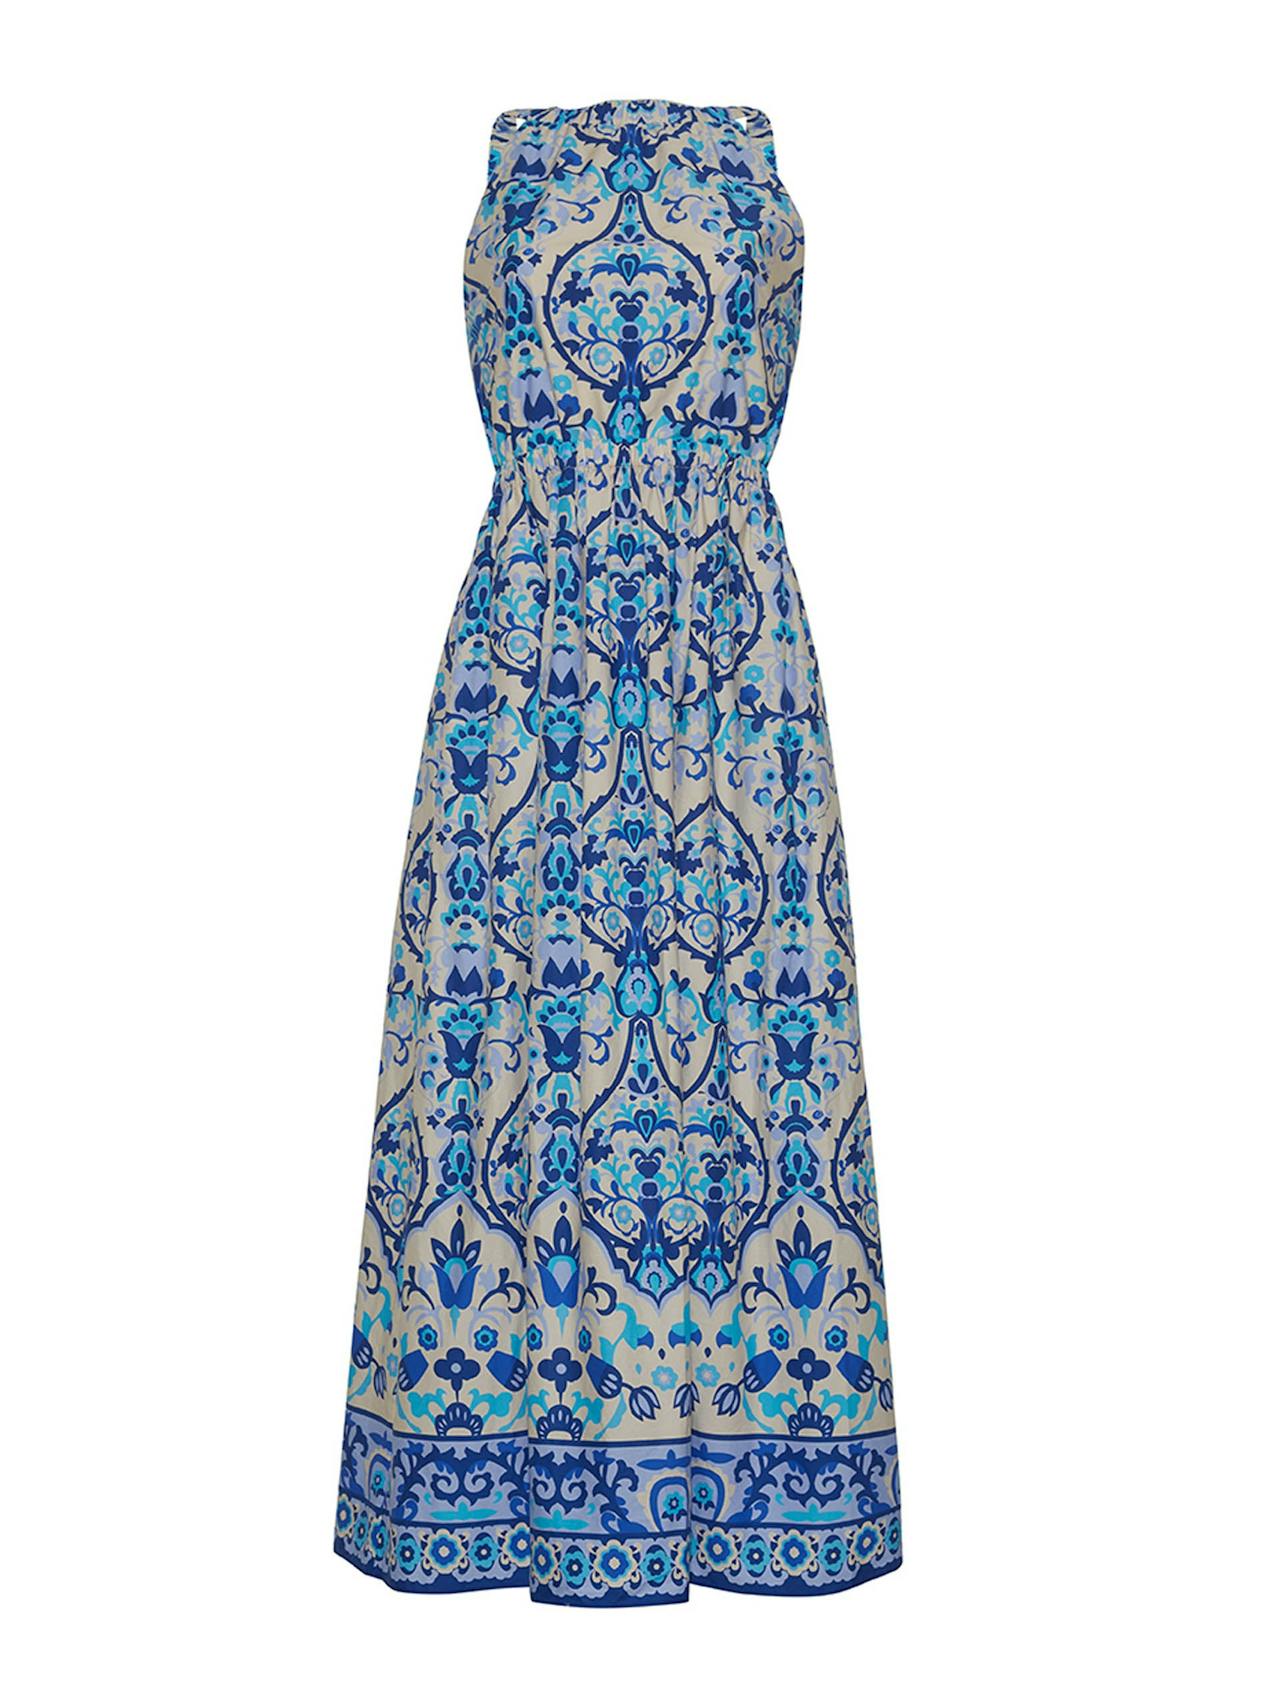 Damask blue Colomba dress